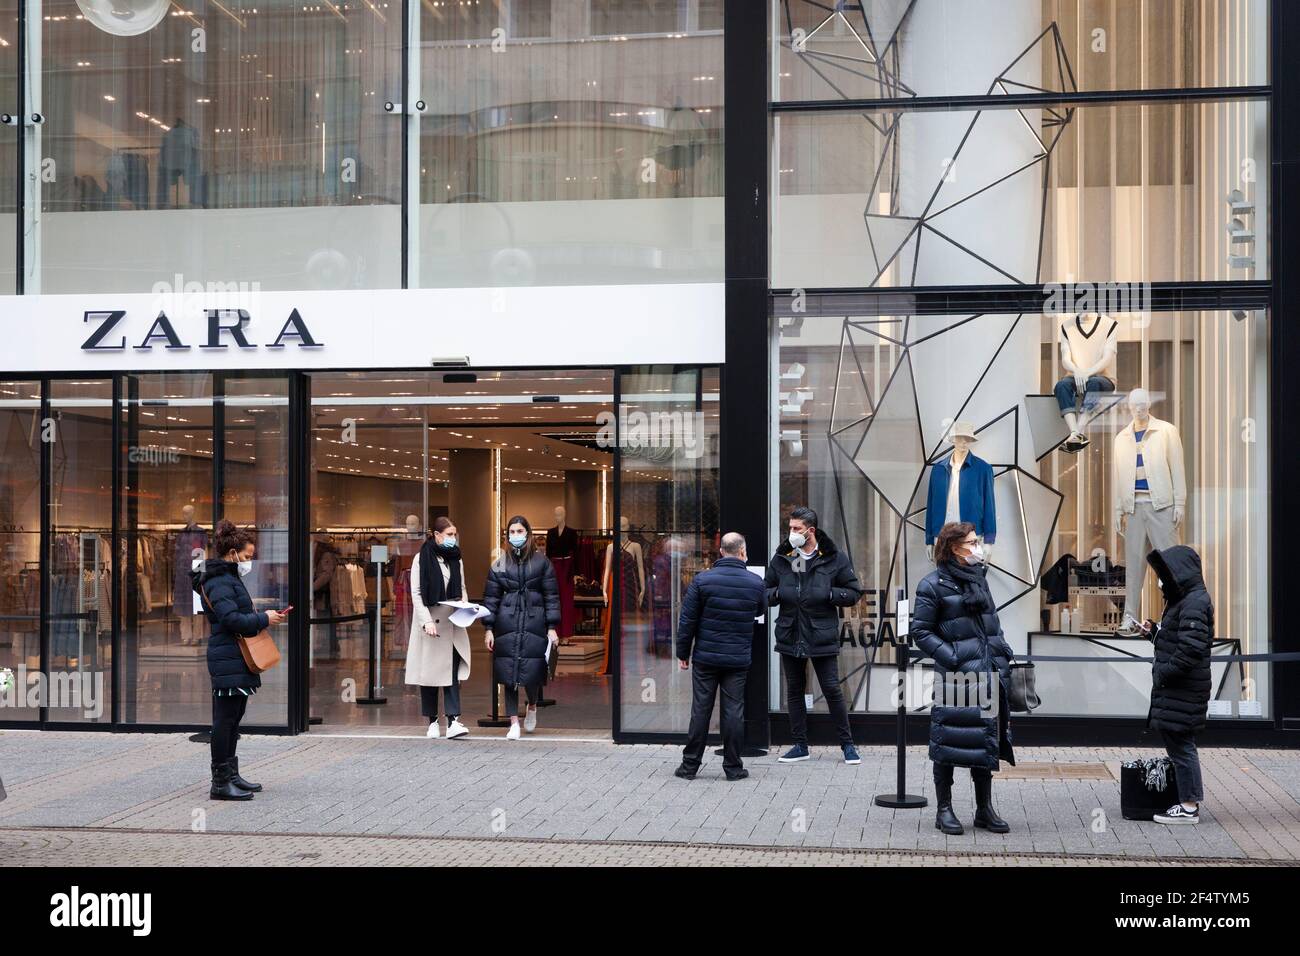 Corona Lockdown, März 18th. 2021. Modegeschäft Zara in der Schildergasse  warten Kunden darauf, die Ware, die sie online bestellt haben, abzuholen  Stockfotografie - Alamy